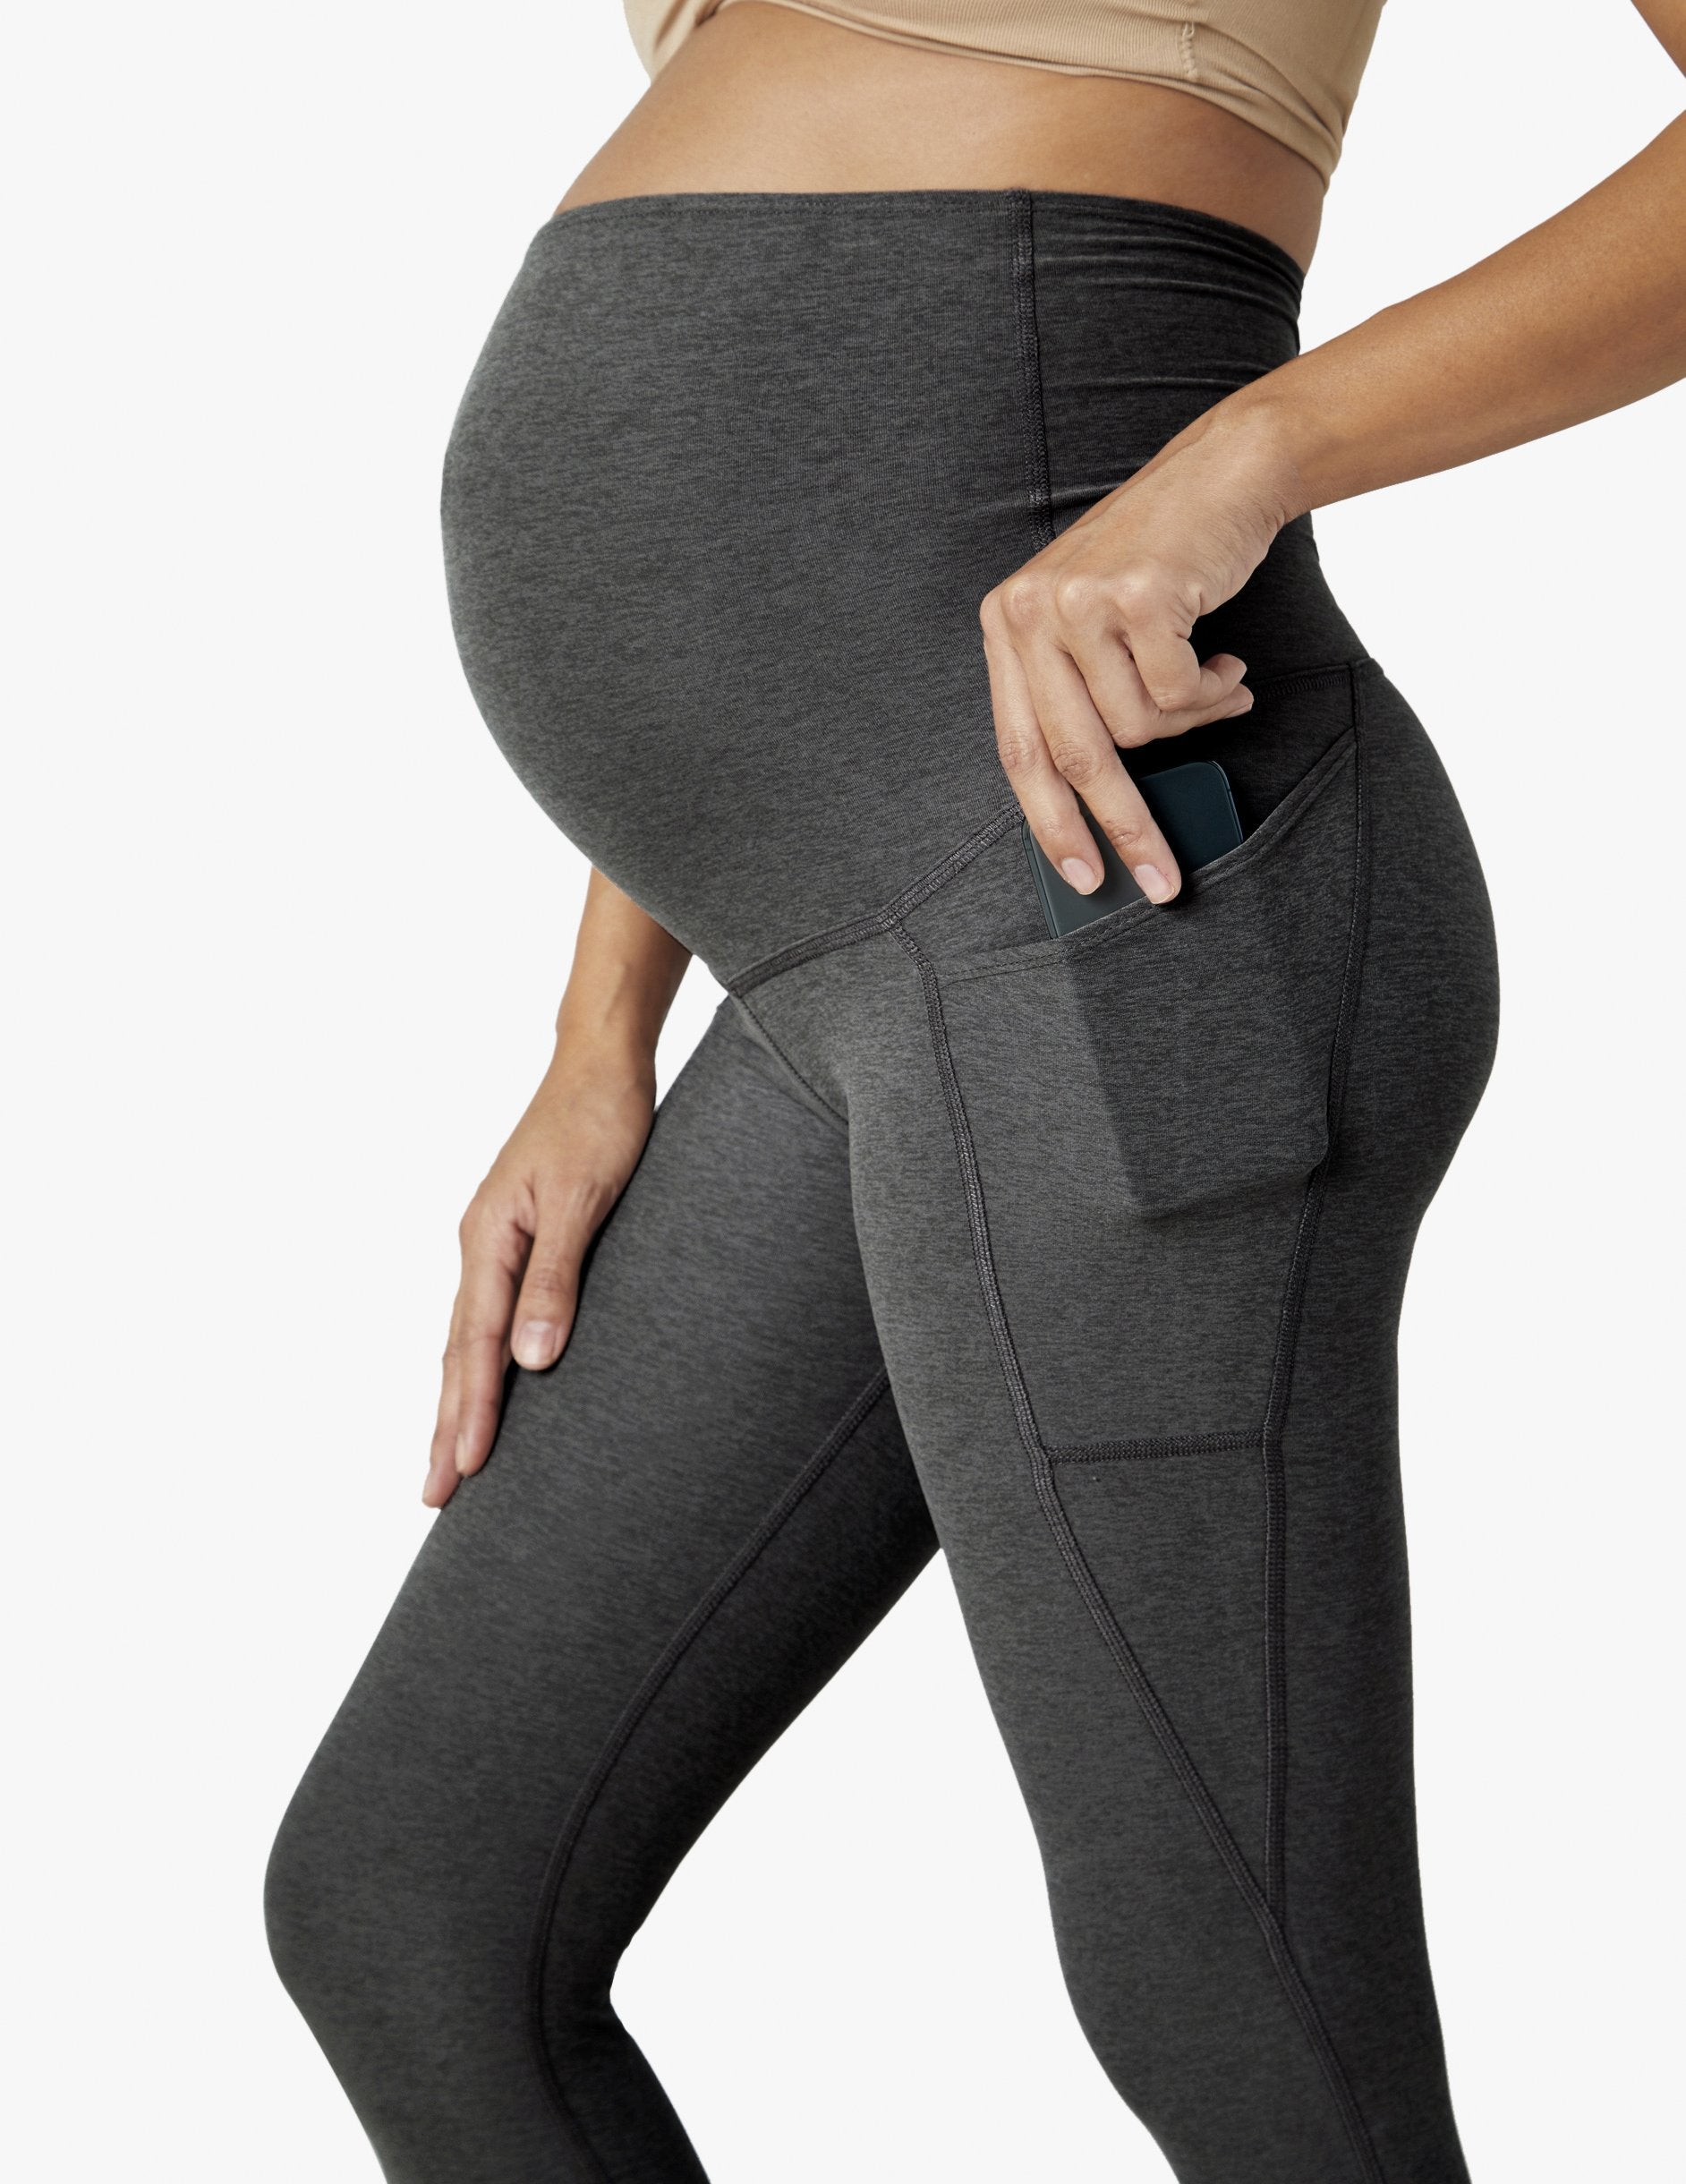 JDEFEG Maternity Leggings Pockets Women Yoga Leggings Valentine